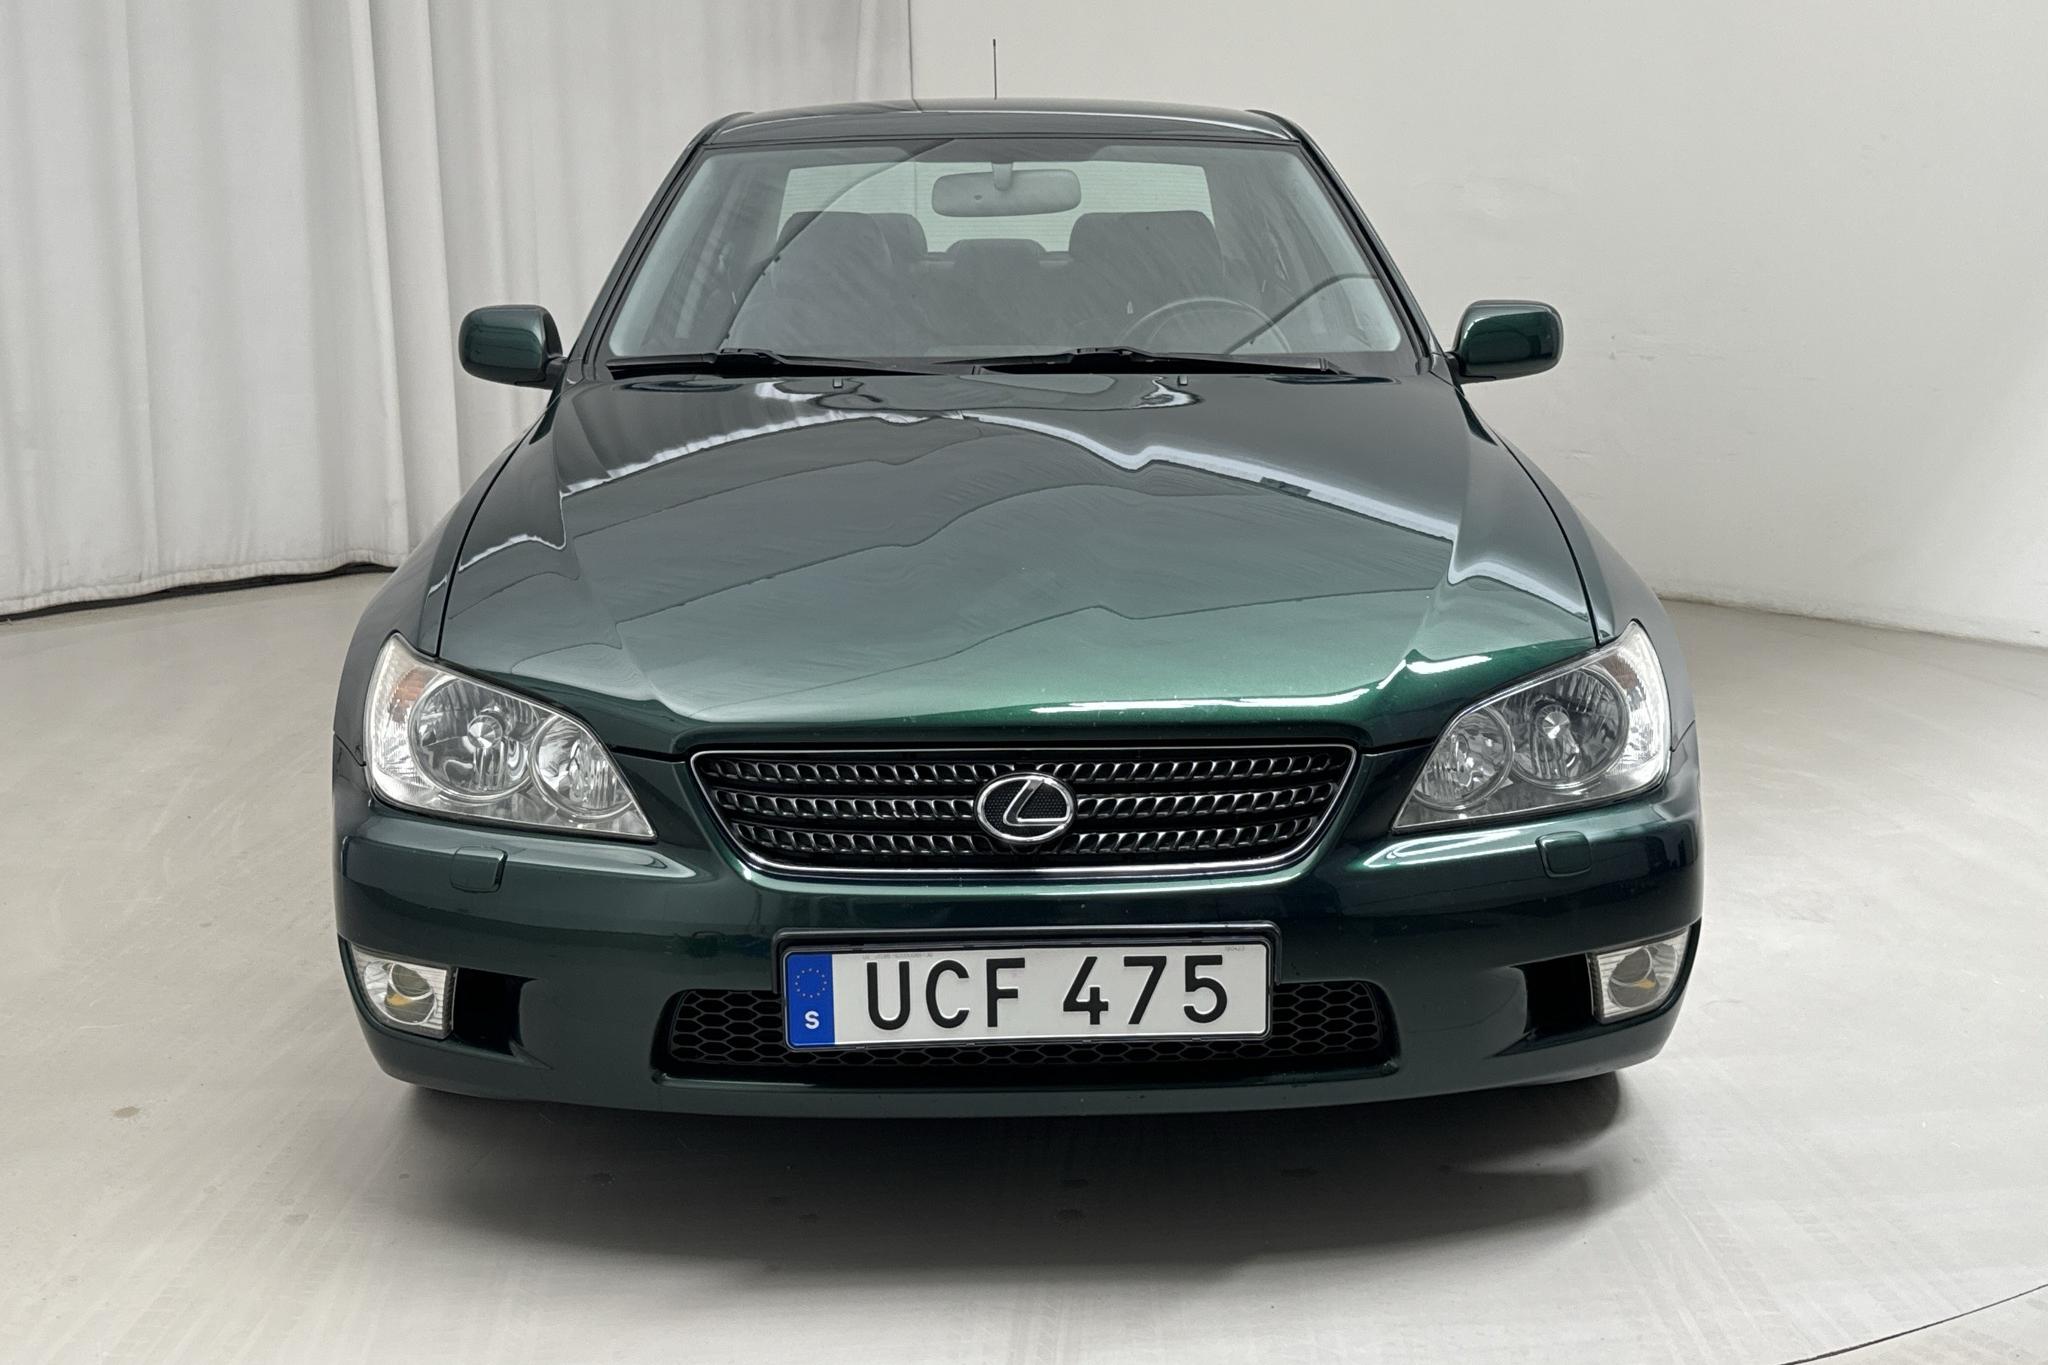 Lexus IS 200 (155hk) - 88 580 km - Manual - green - 2002